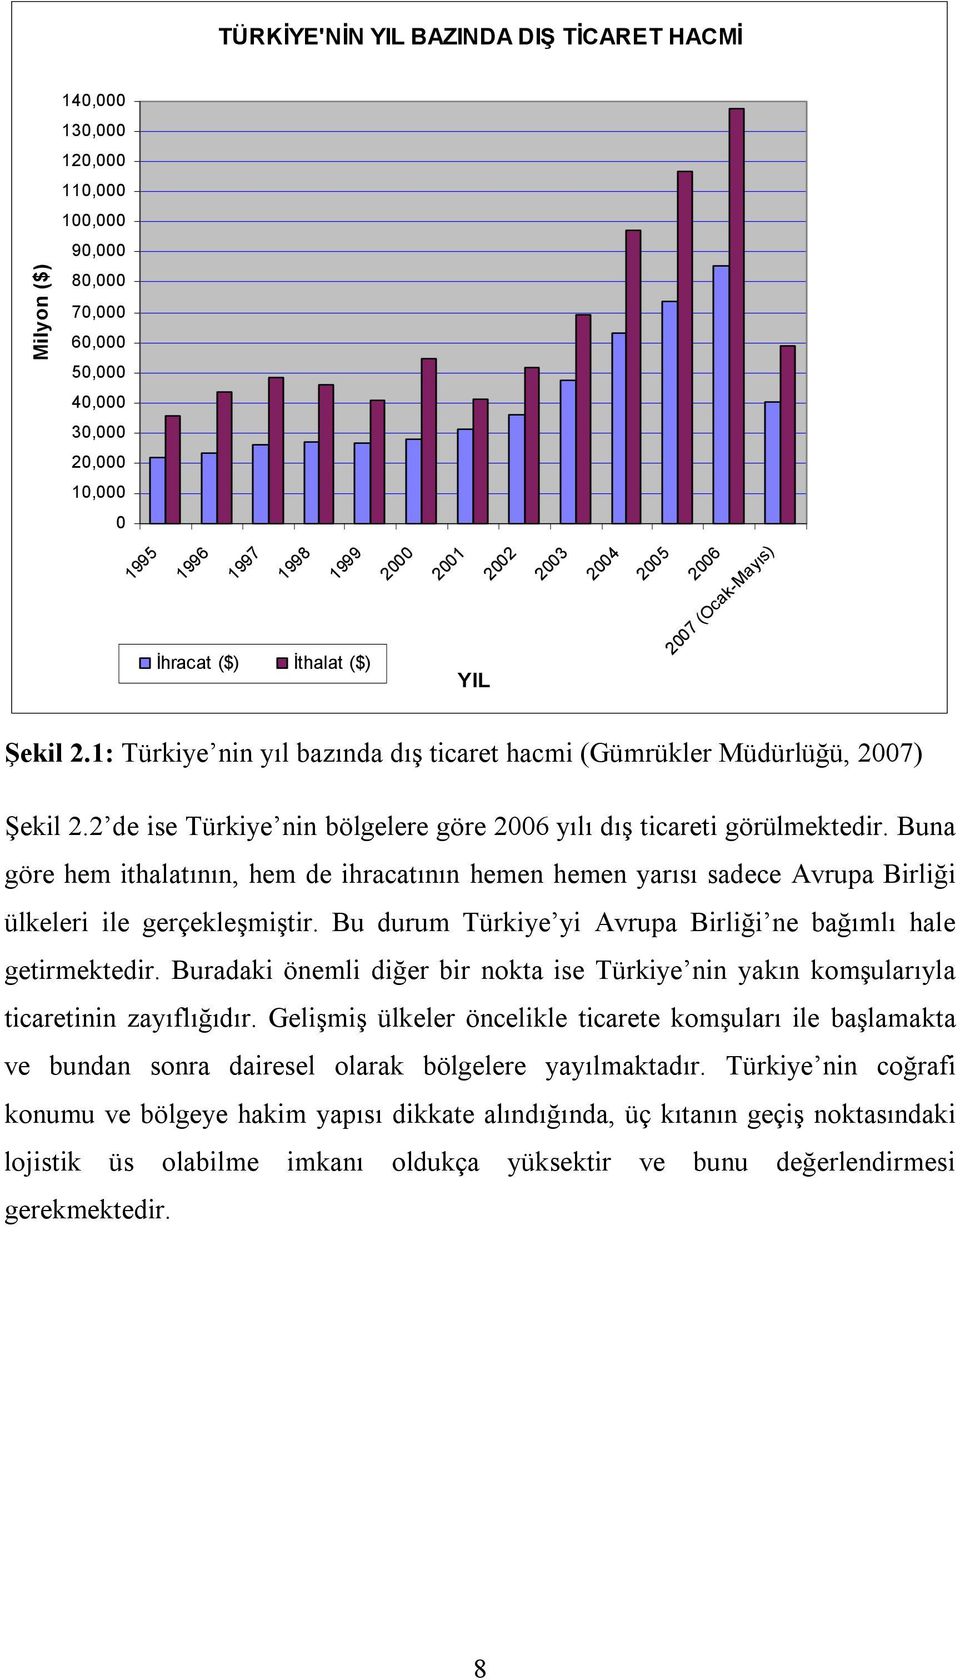 2 de ise Türkiye nin bölgelere göre 2006 yılı dış ticareti görülmektedir. Buna göre hem ithalatının, hem de ihracatının hemen hemen yarısı sadece Avrupa Birliği ülkeleri ile gerçekleşmiştir.